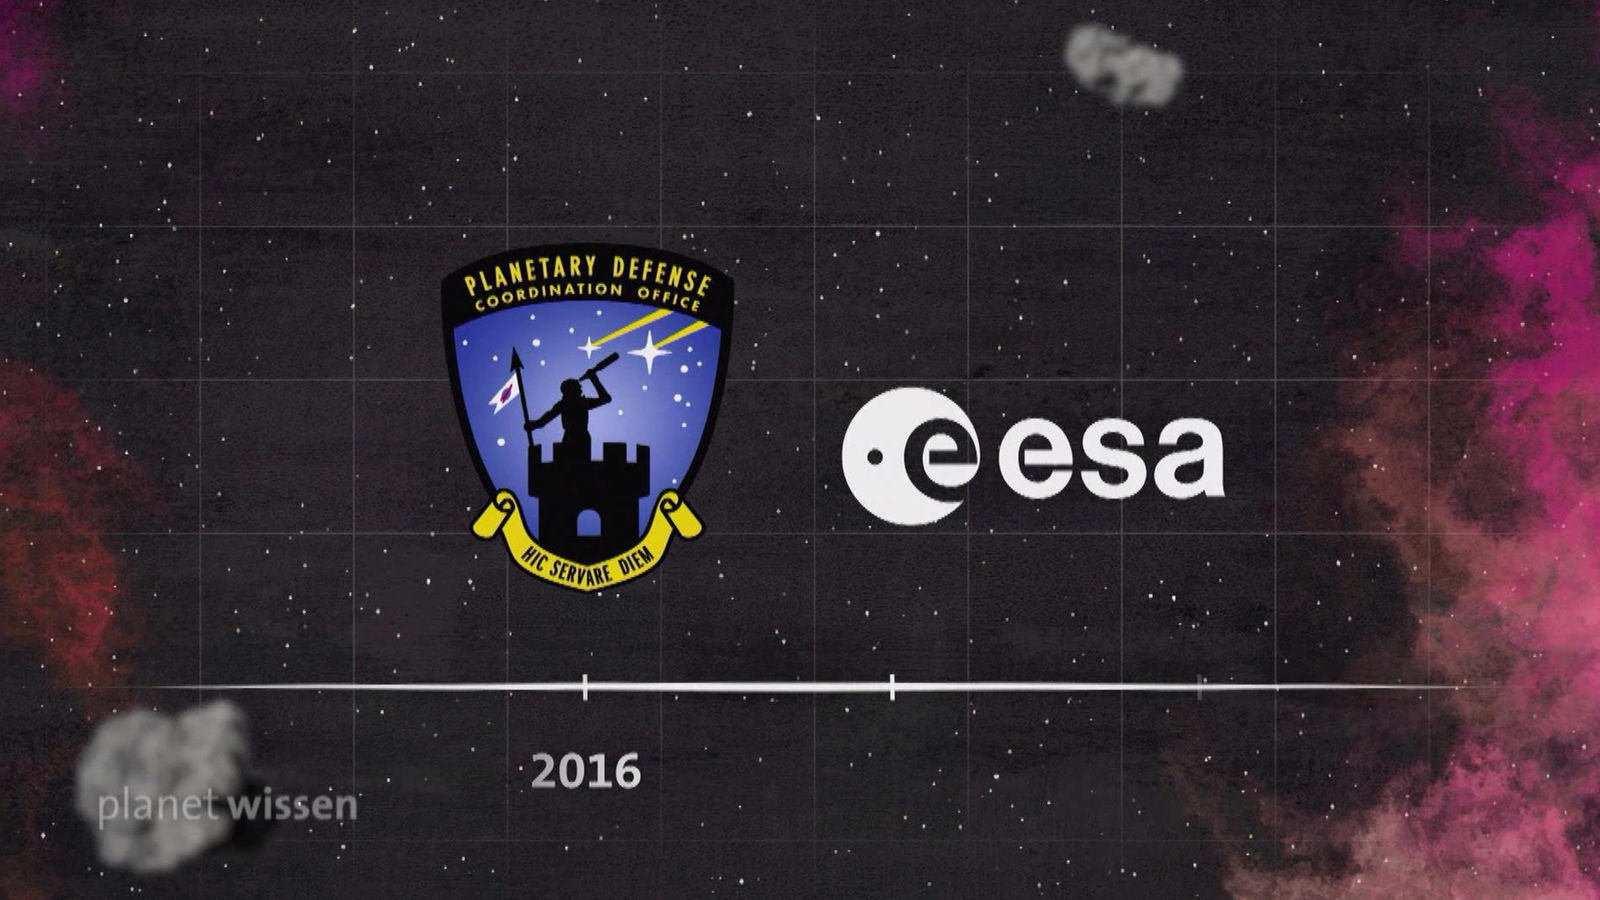 Grafik: Logo des 'Planetary Defense Office' und der 'ESA' vor einem Sternenhimmel.